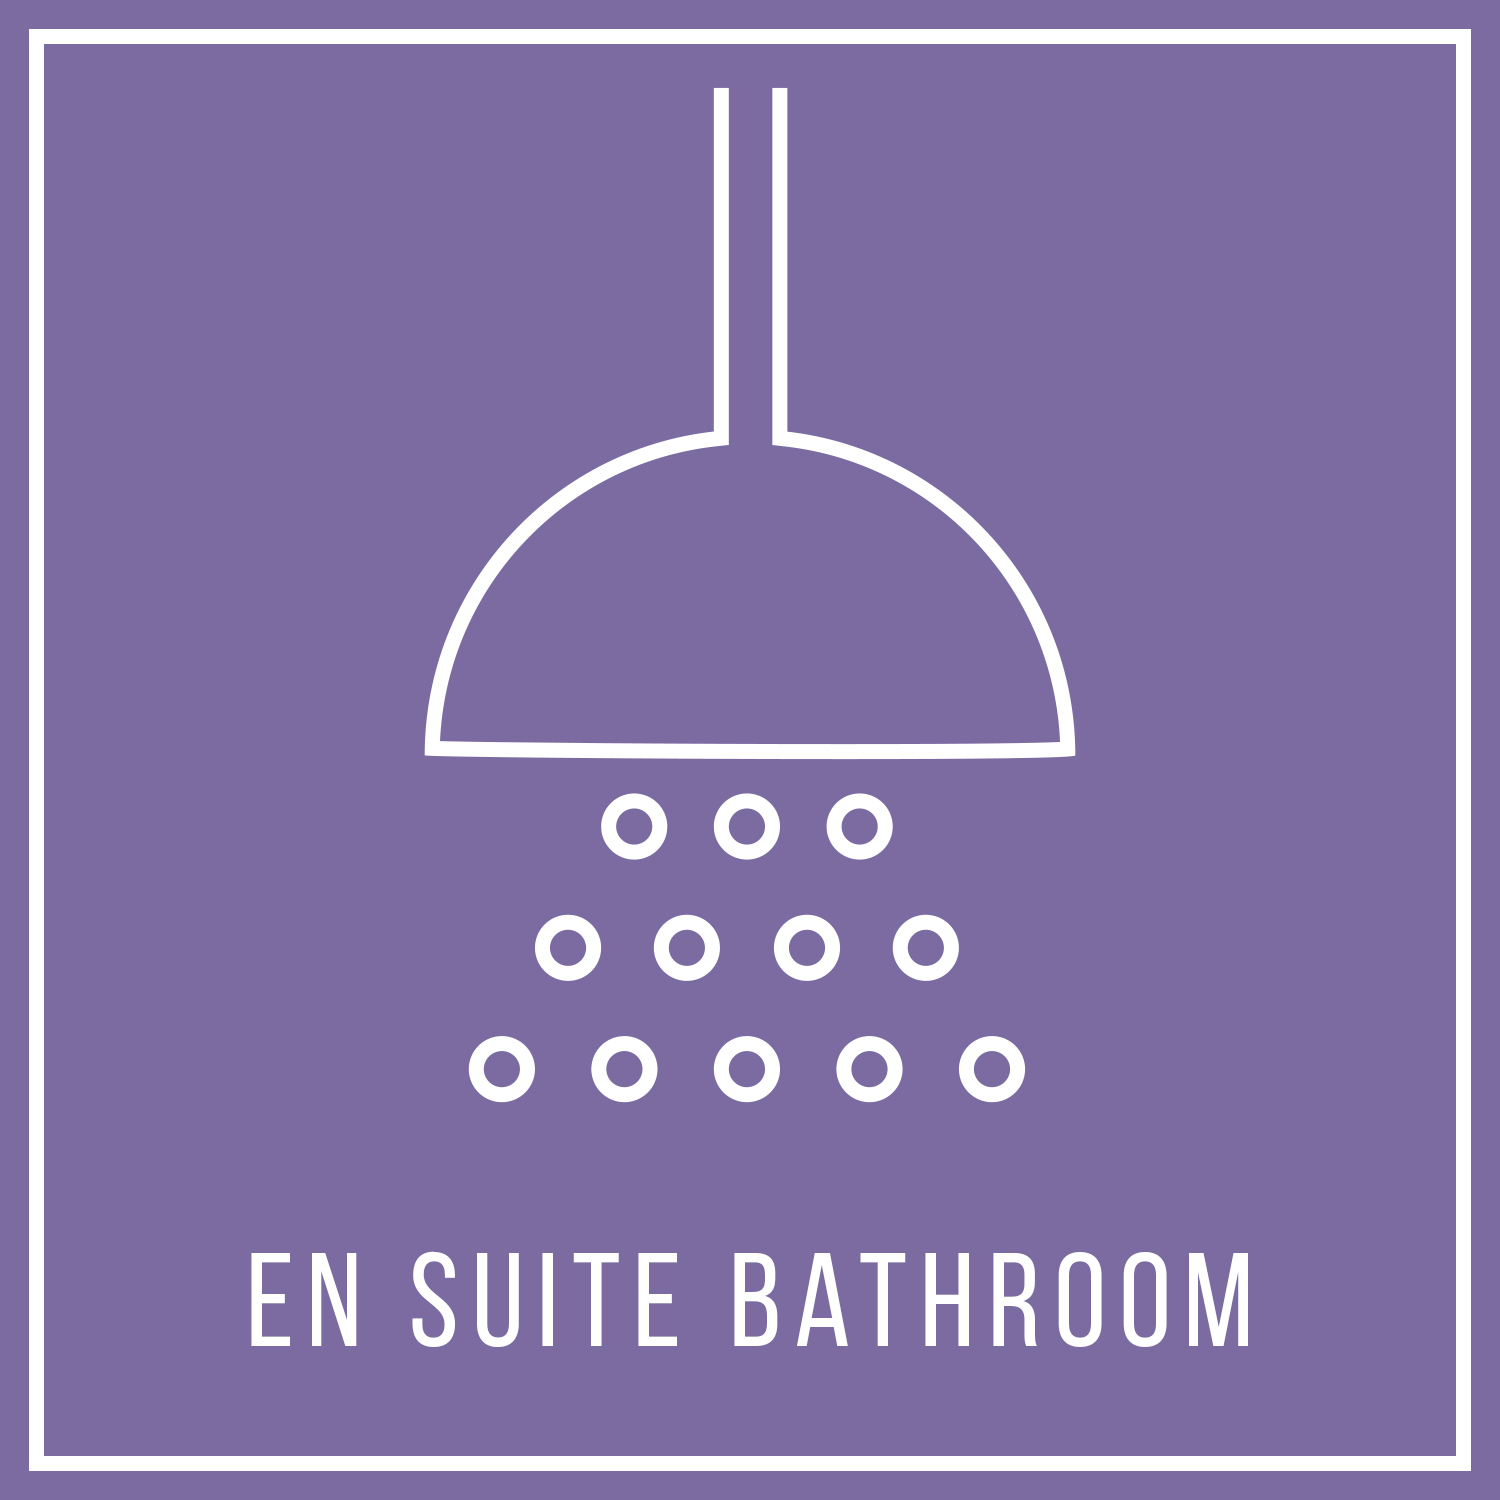 aya-kapadokya-room-features-chapel-suite-square-en-suite-bathroom